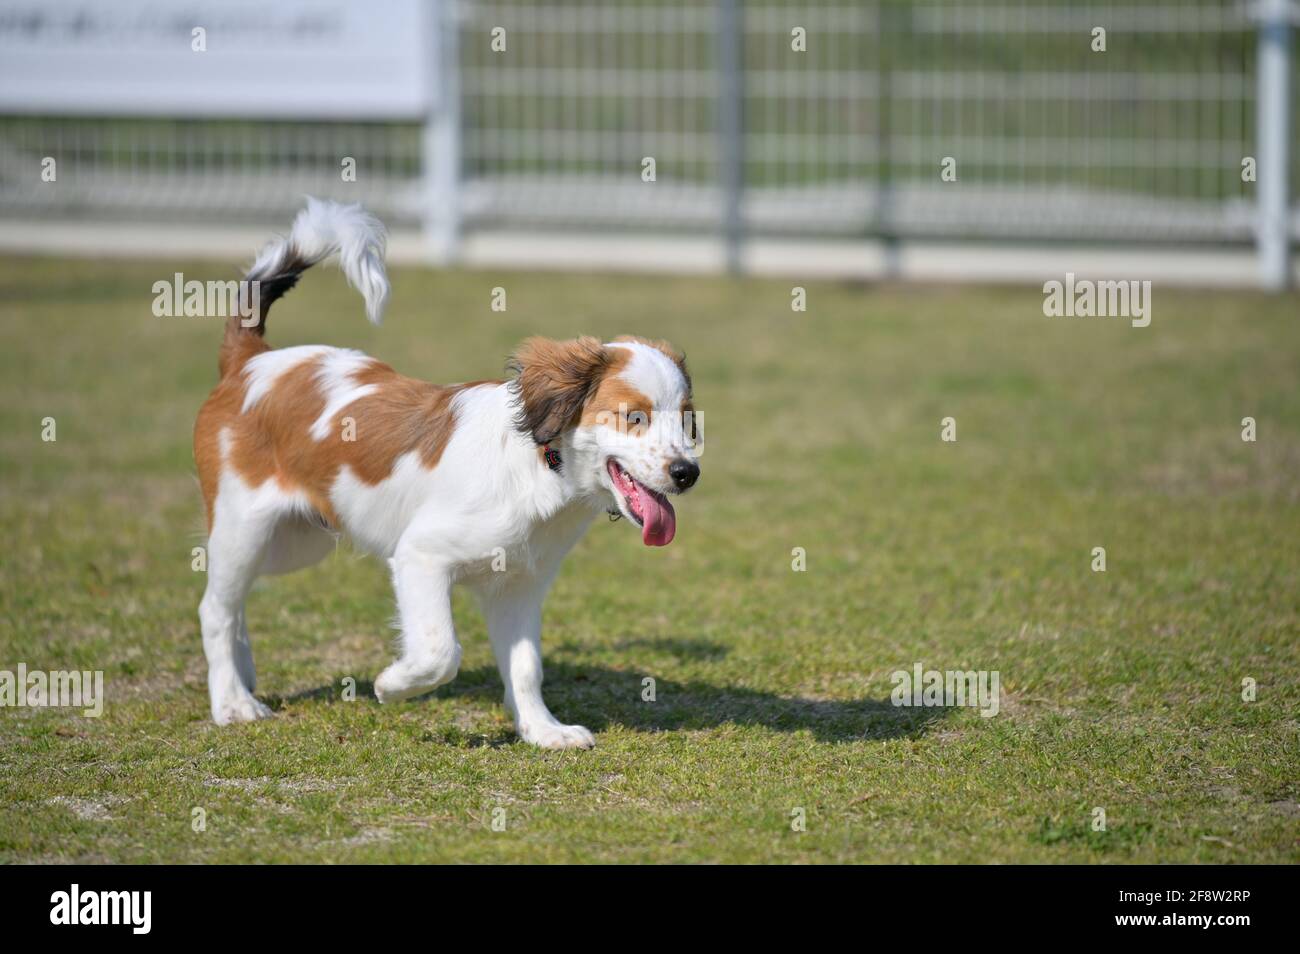 Joyeux jeune chien de race kooiker marchant sur l'herbe avec sa langue dehors. Banque D'Images